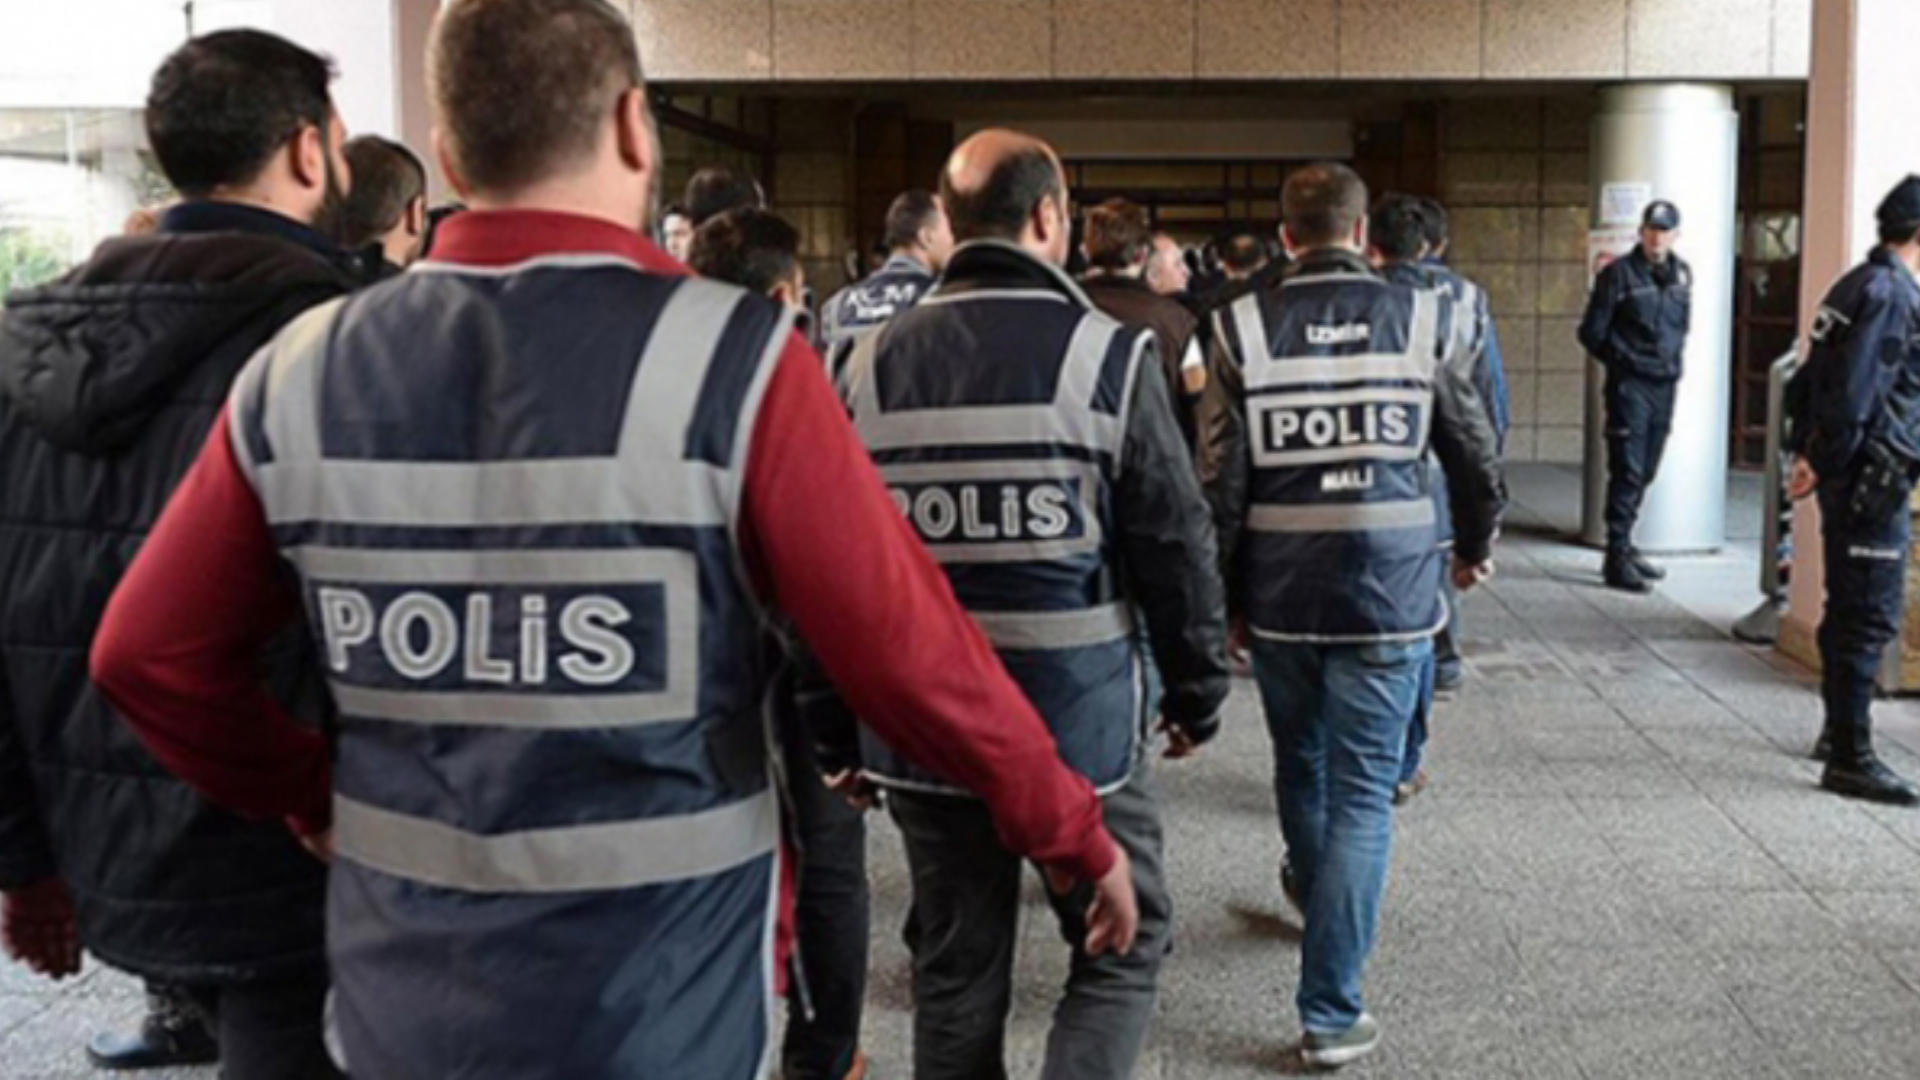 Kocaeli'de ByLock kullandıkları iddia edilen 4 kişiye gözaltı